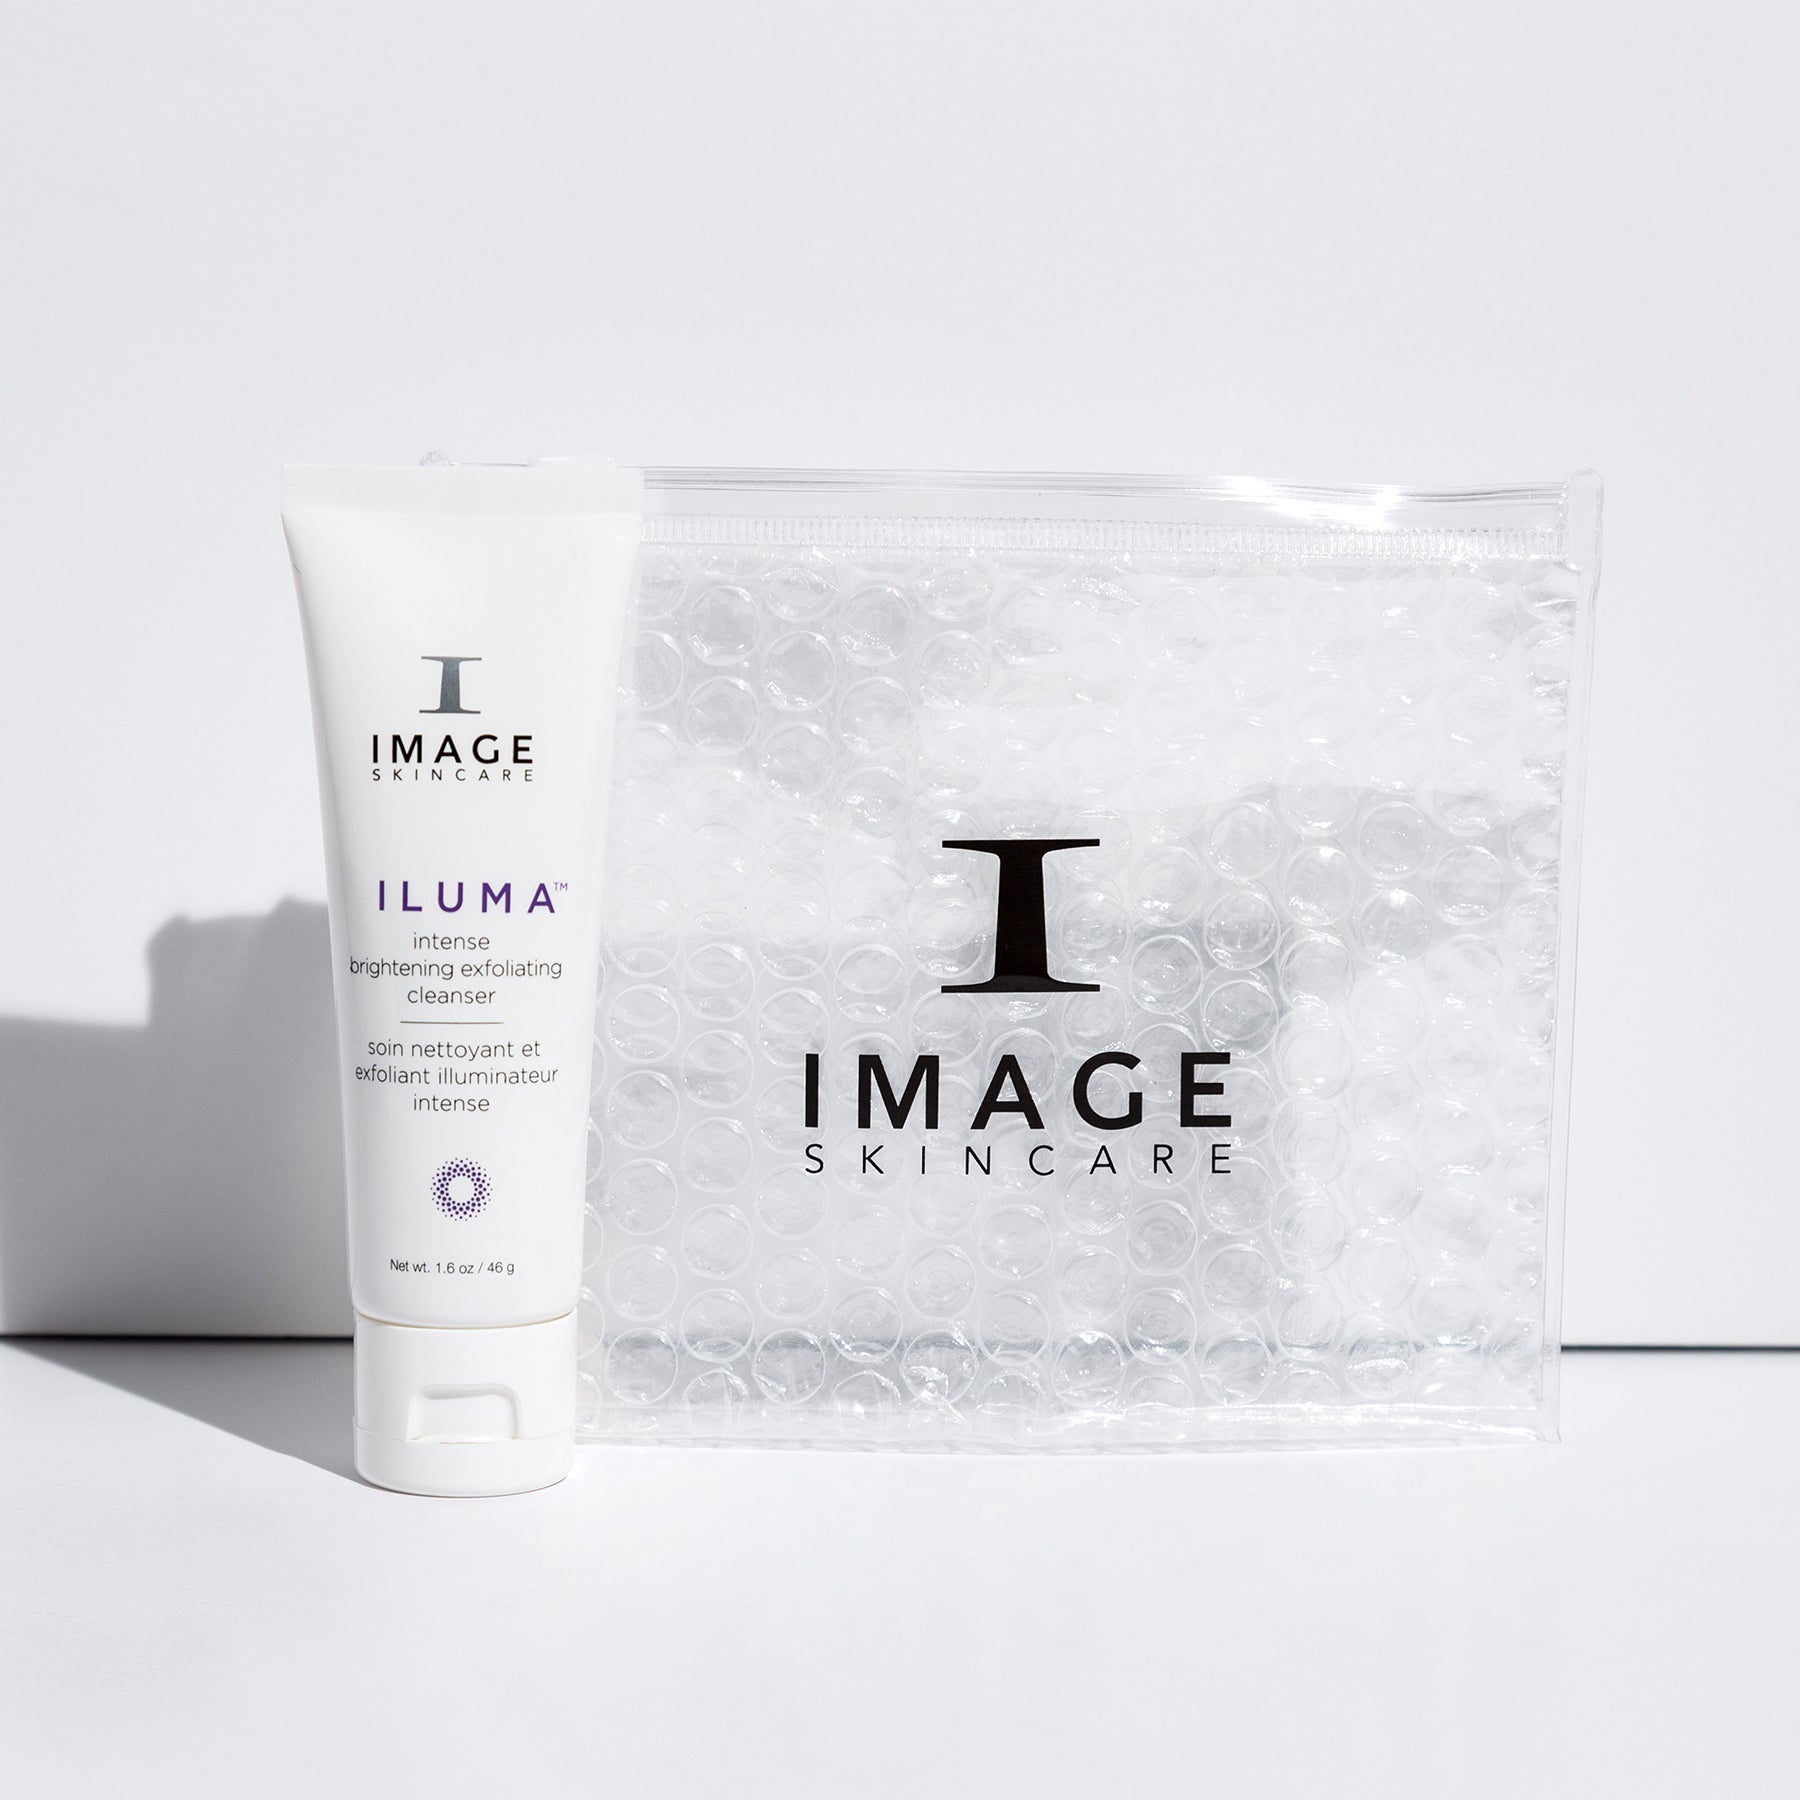  IMAGE Skincare Iluma Intense Brightening Exfoliating